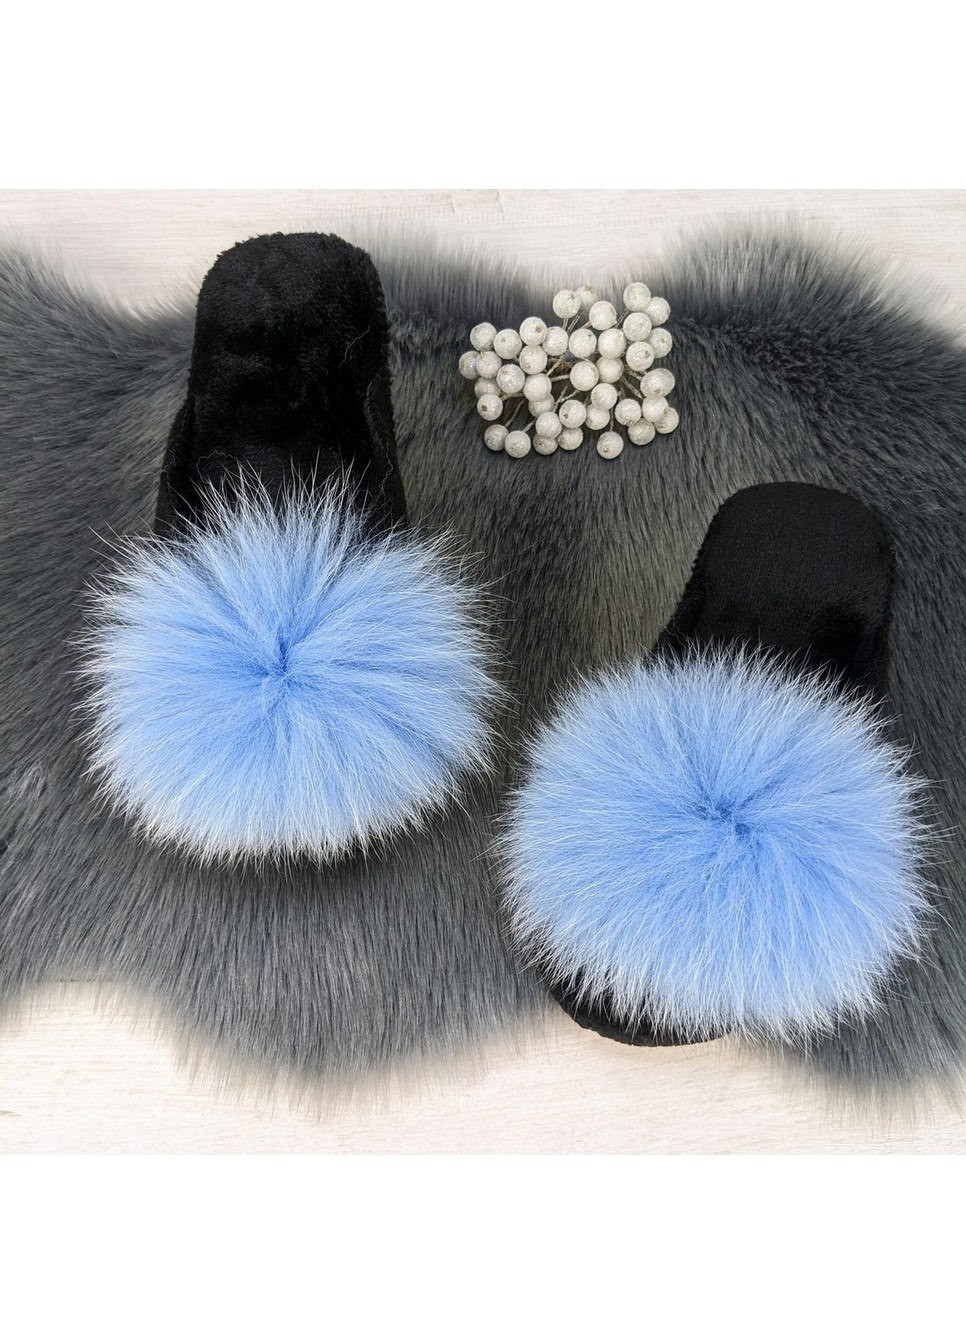 Голубые тапочки женские войлочные для ламината с натуральным мехом Slippers с помпонами